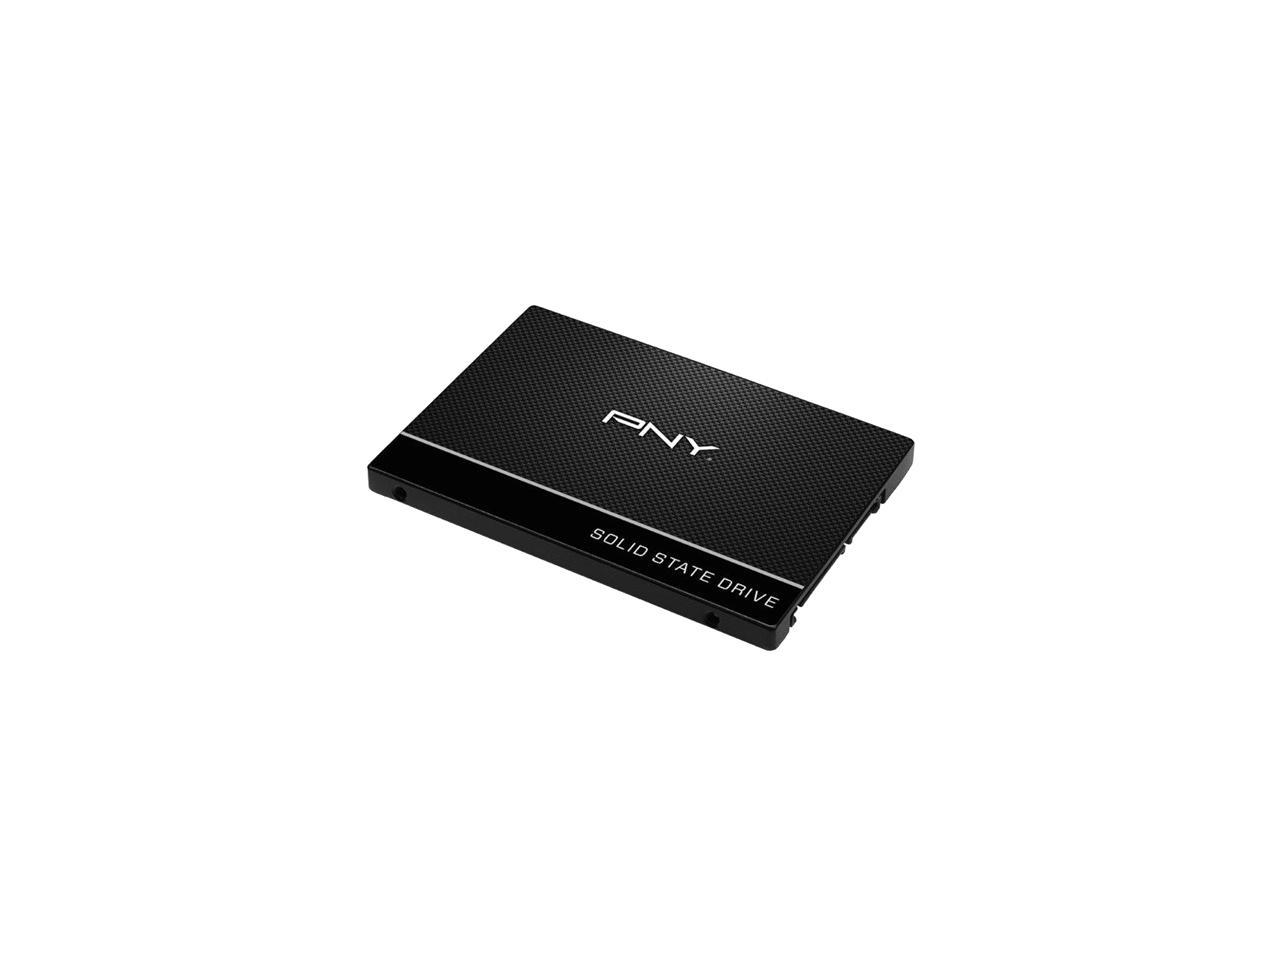 PNY CS900 120GB 2.5" SATA III INTERNAL Solid State Drive (SSD) - SSD7CS900-120-RB